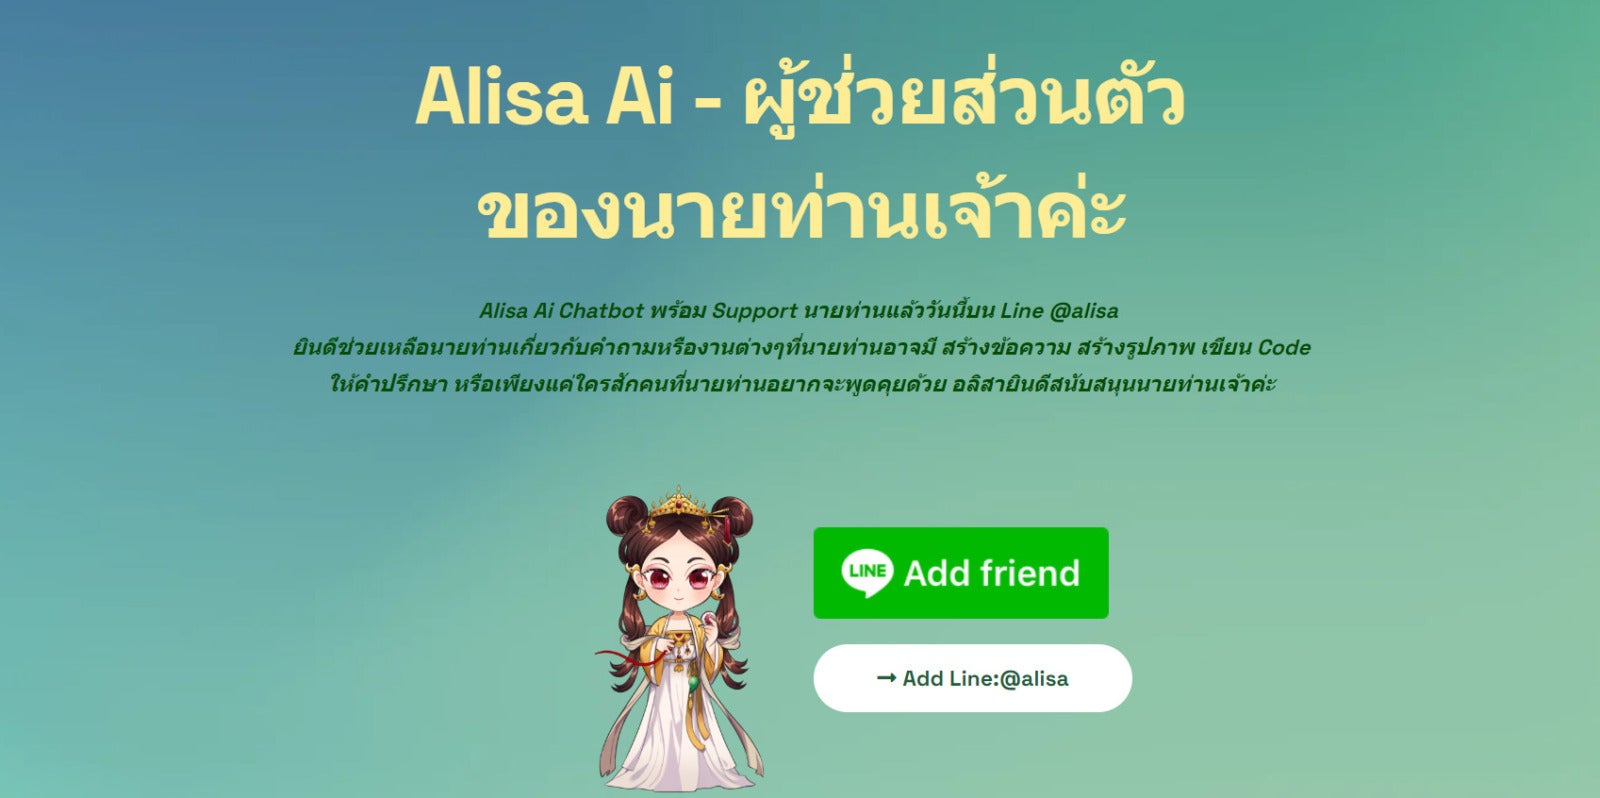 Alisa Ai Homepage